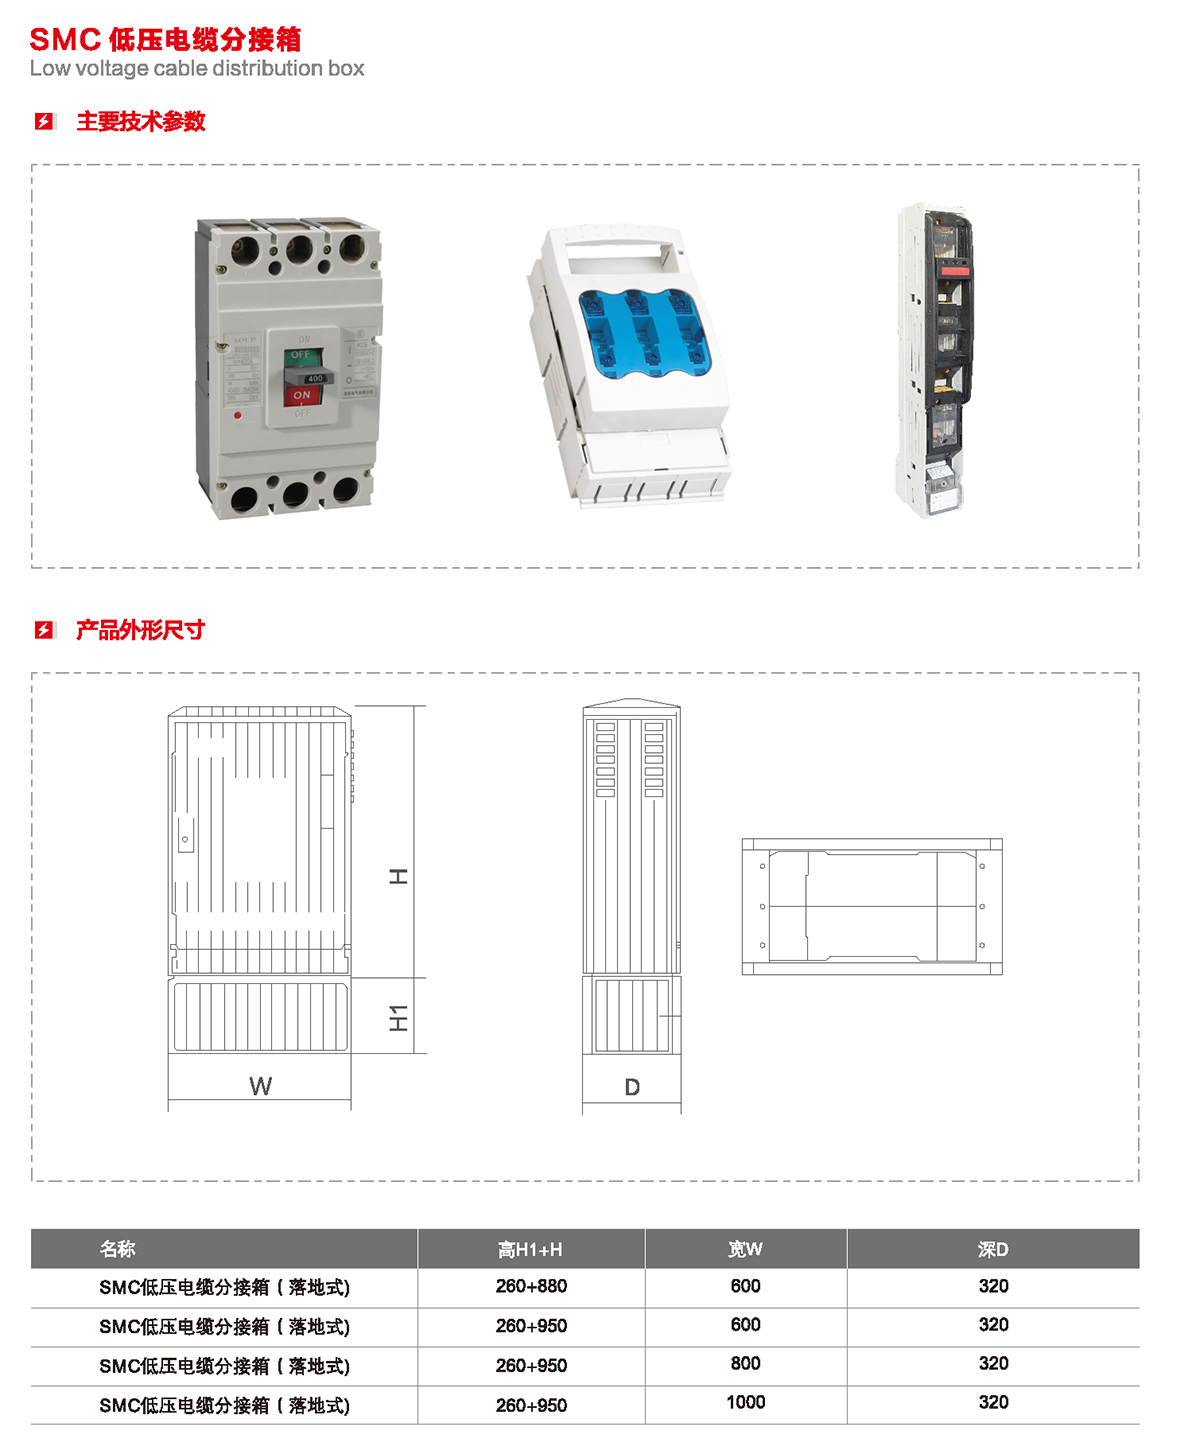 SMC 低壓電纜分接箱主要技術參數、產品外形尺寸